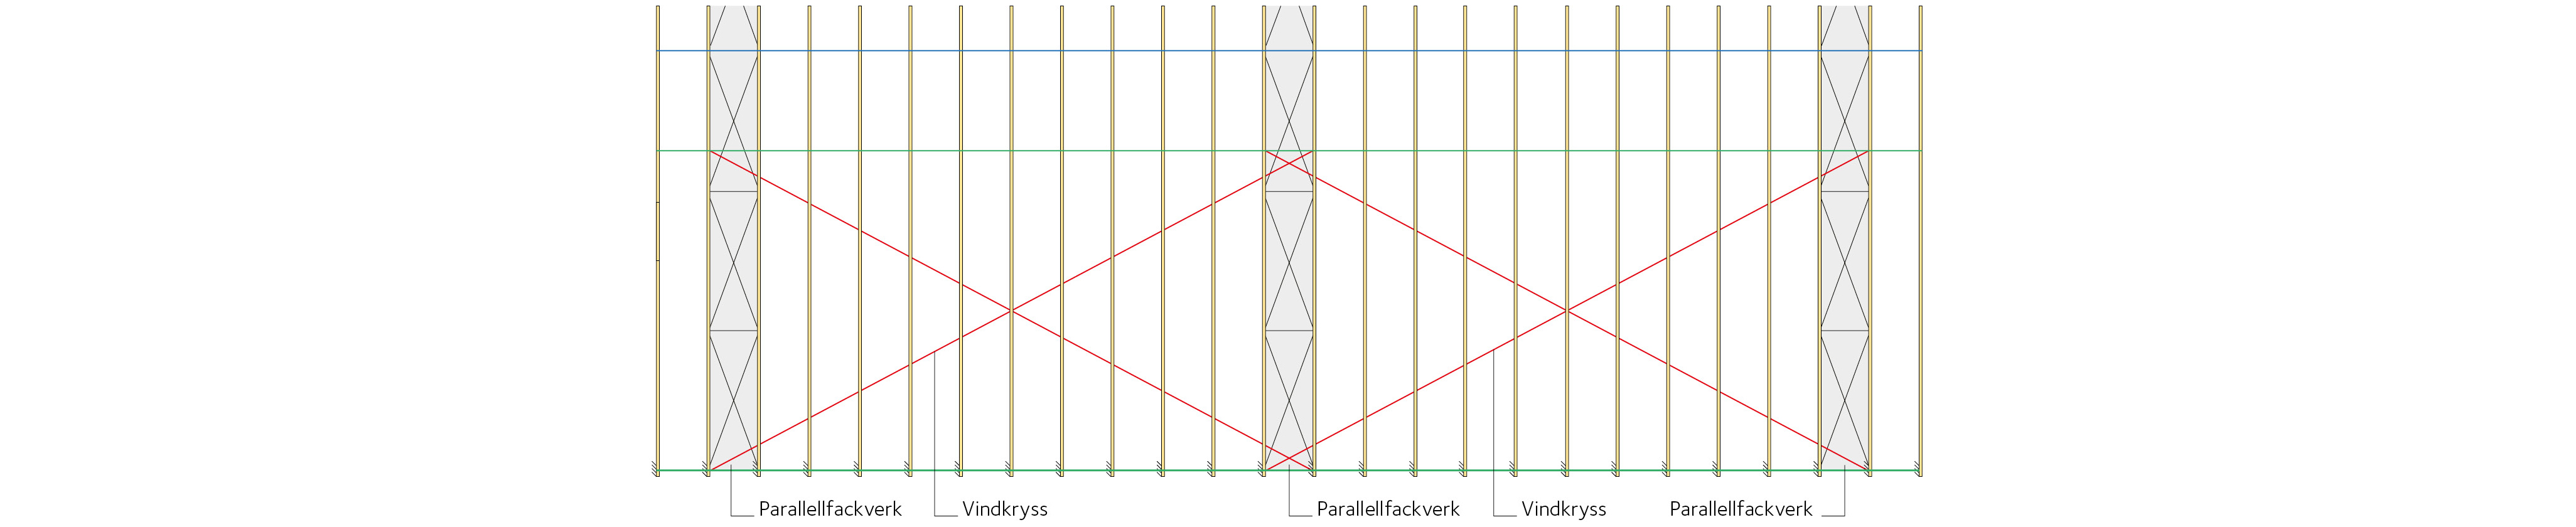 Takplan, en takhalva redovisad Grönt streck indikerar kortlingsrad, blått streck indikerar nocklinje